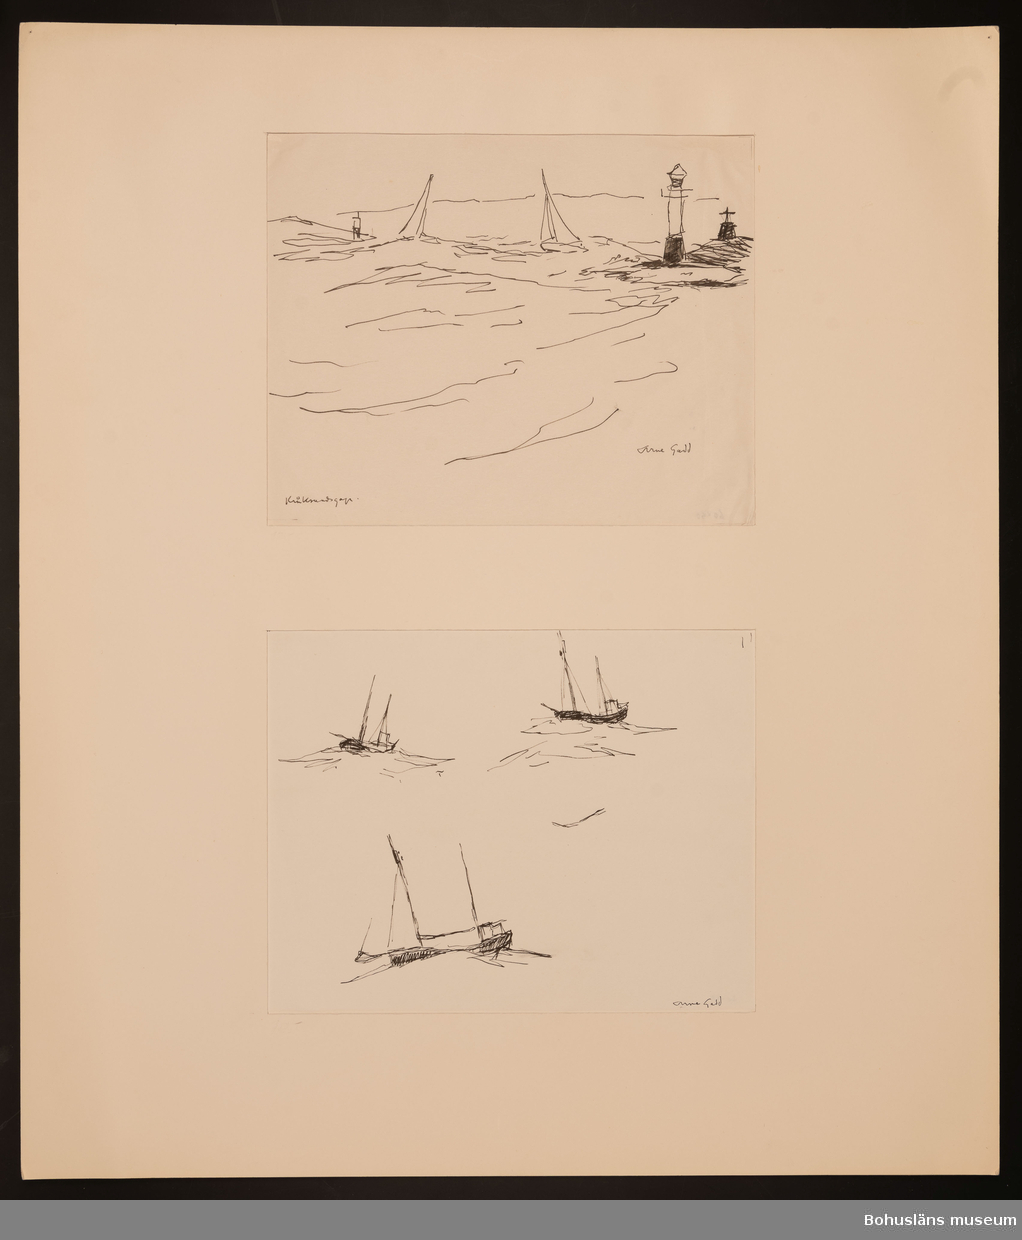 Kråsundsgap med sina fyrar, kummel och två seglare i hög sjö.
Tre båstudier av fraktskuta i hög sjö.